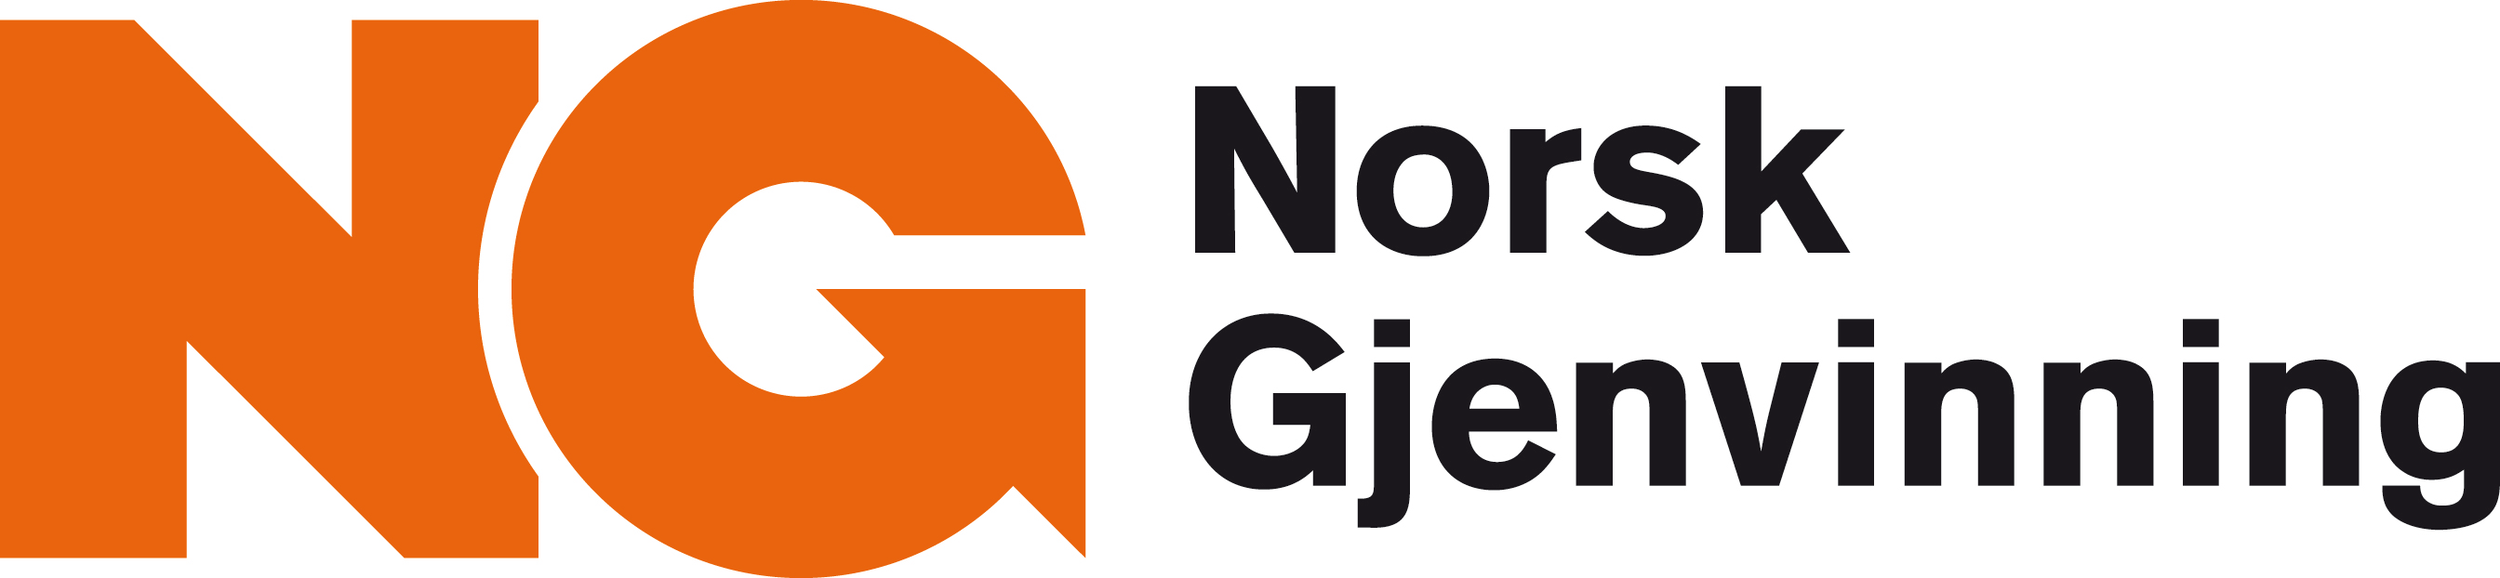 norsk gjennvinning logo.jpeg